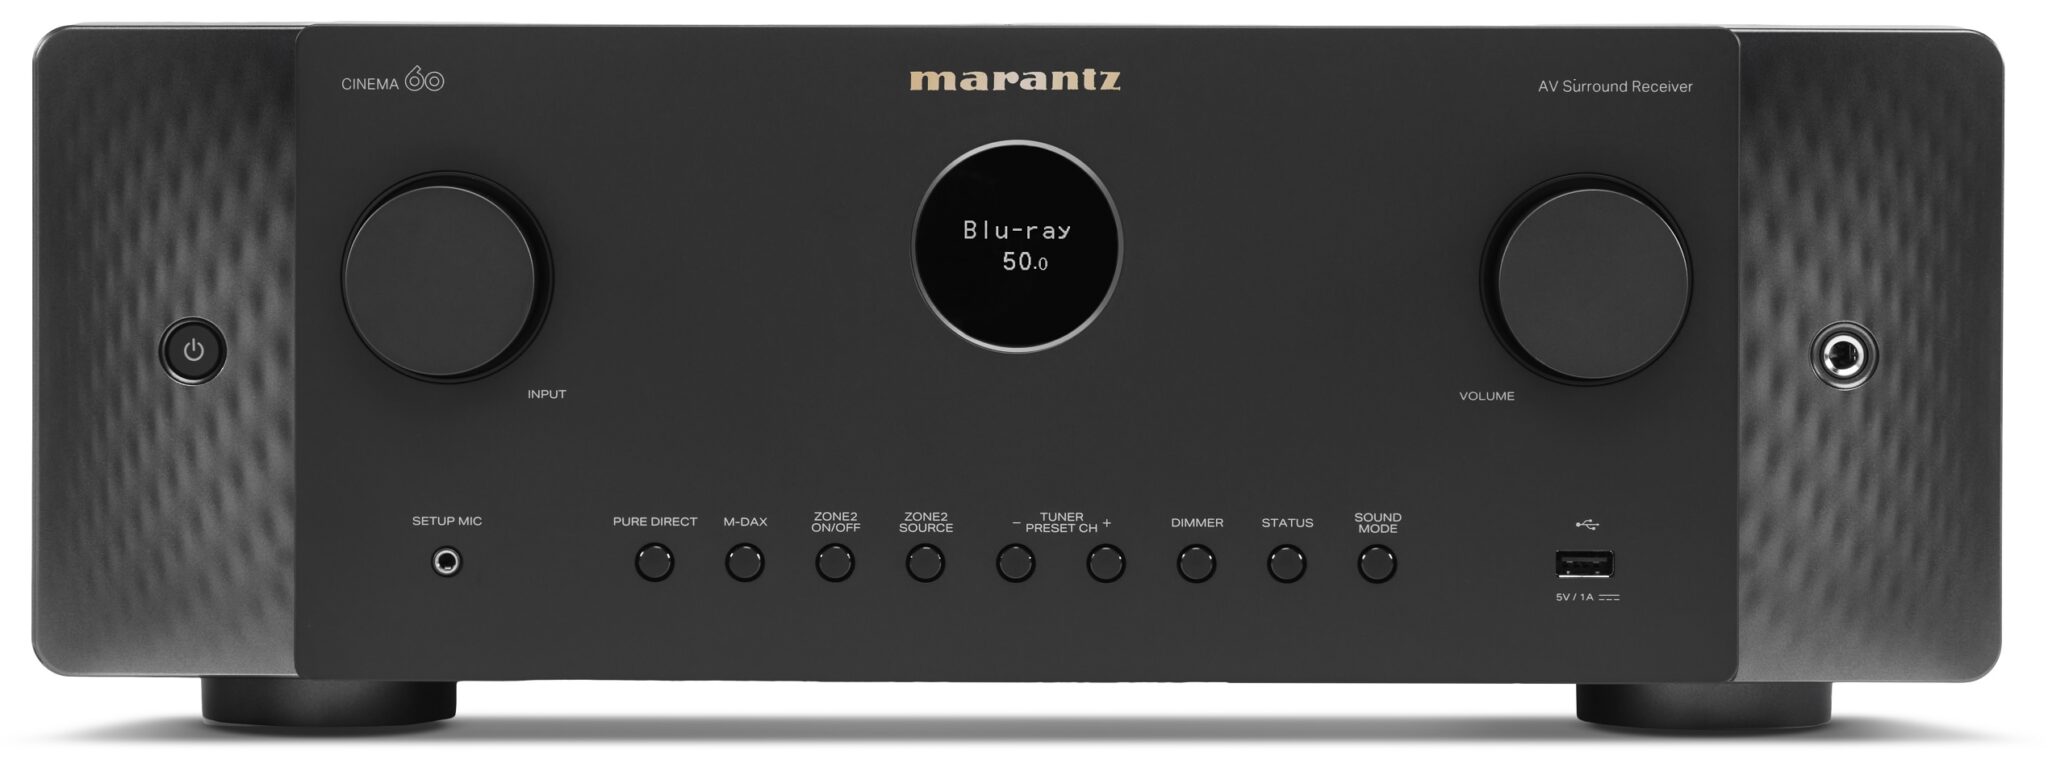 Marantz CINEMA 60 zwart - AV Receiver